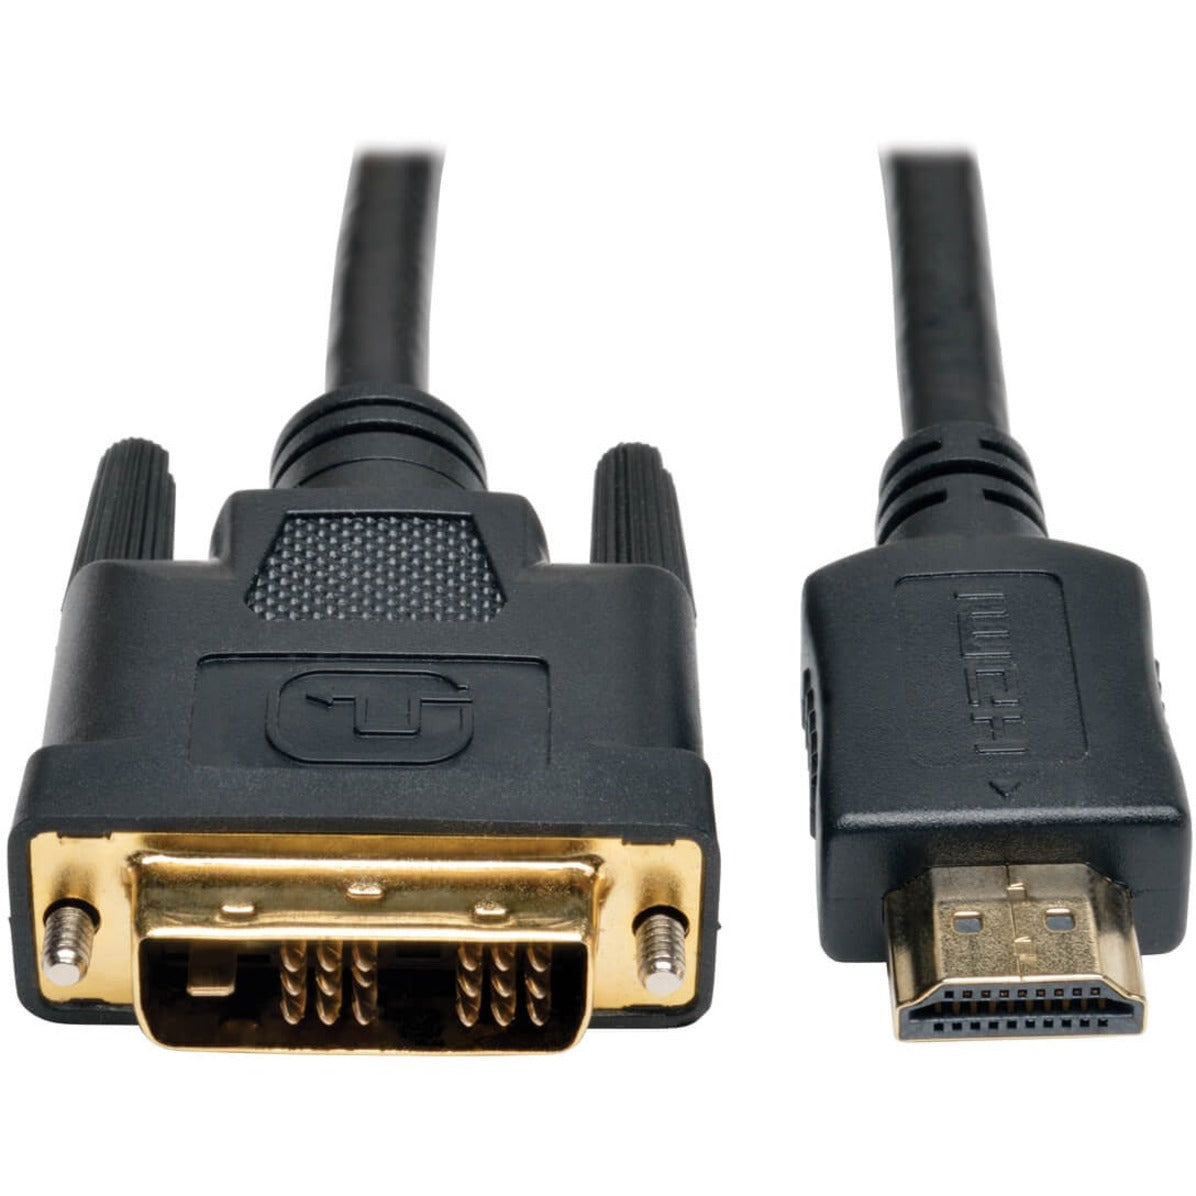 Marca: Tripp Lite  Cable HDMI a DVI P566-020 20-pies Protección EMI/RF Conectores bañados en oro